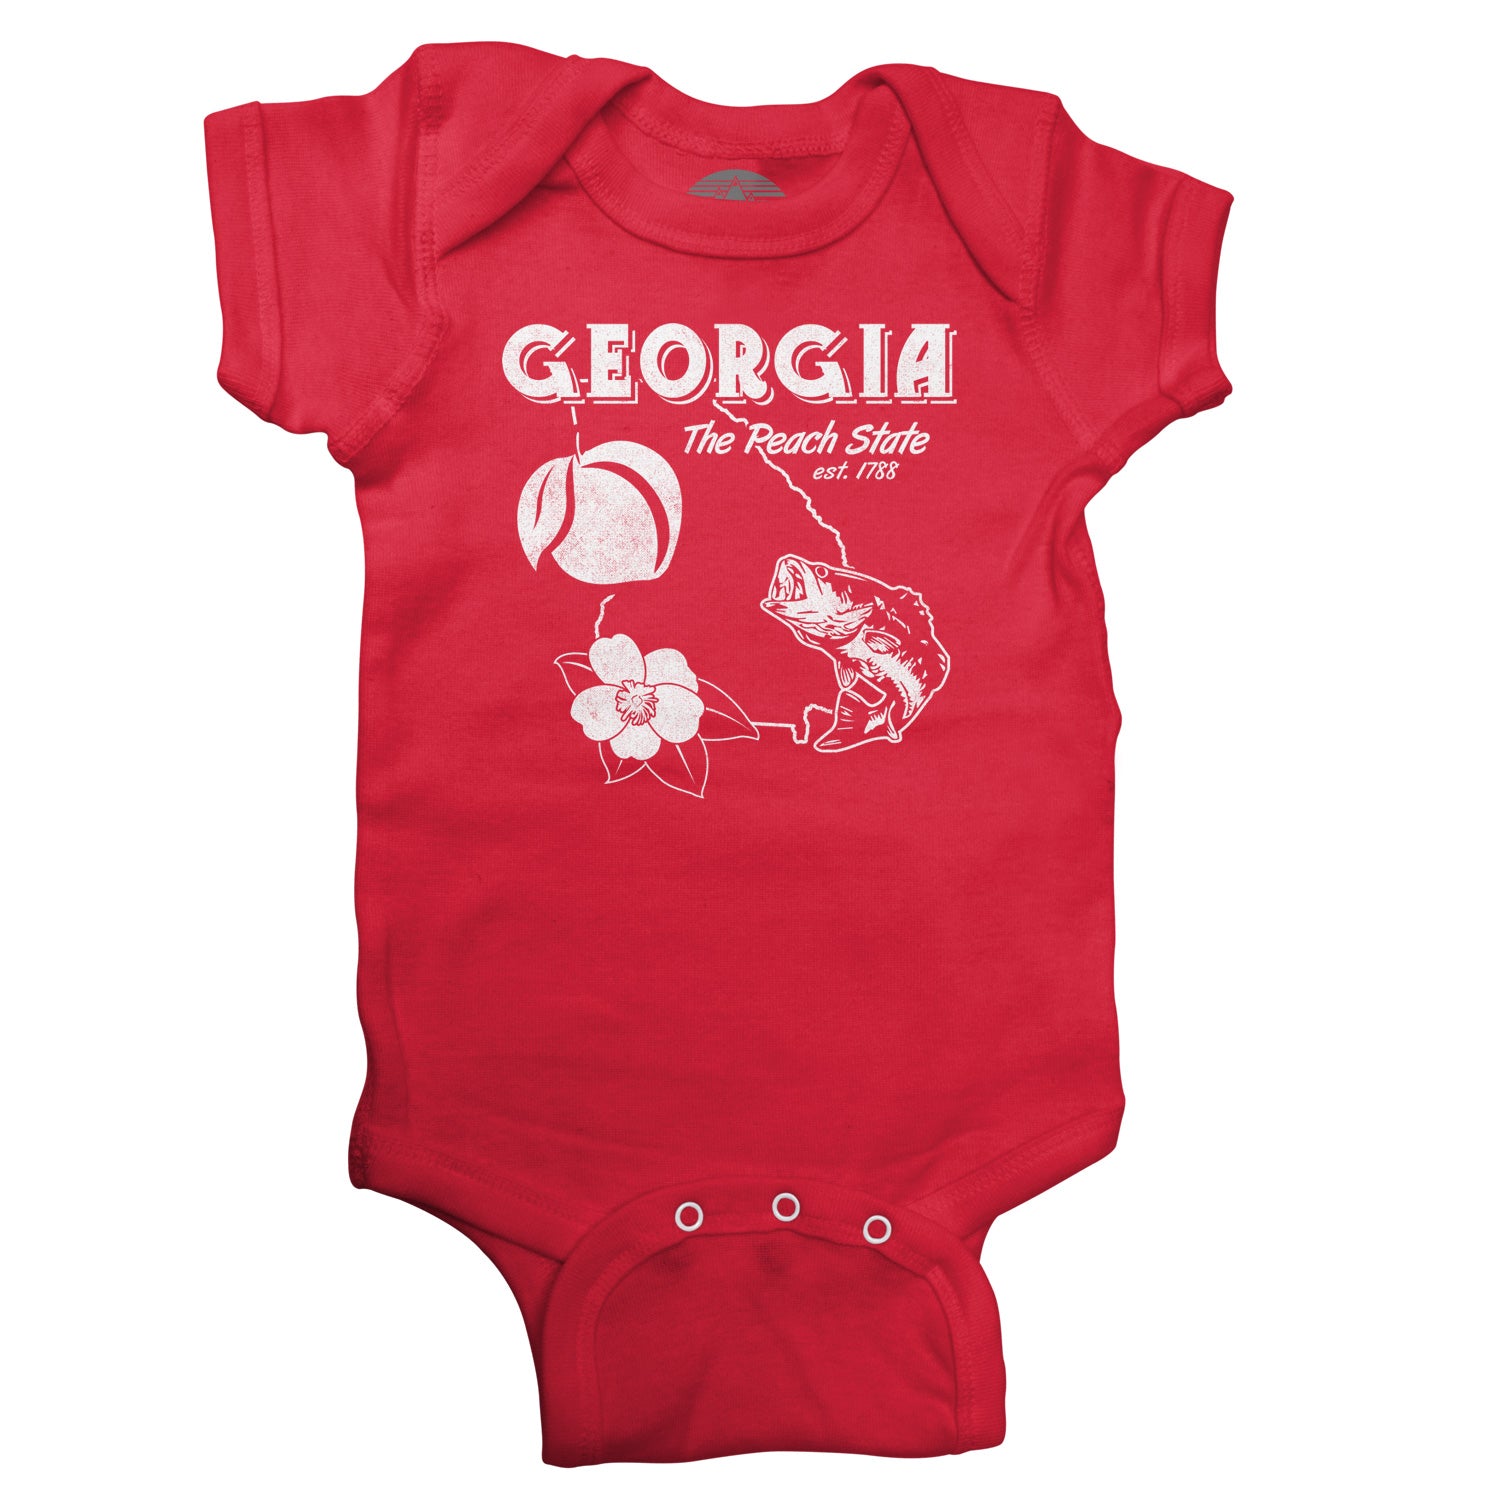 Georgia Infant Bodysuit - Unisex Fit